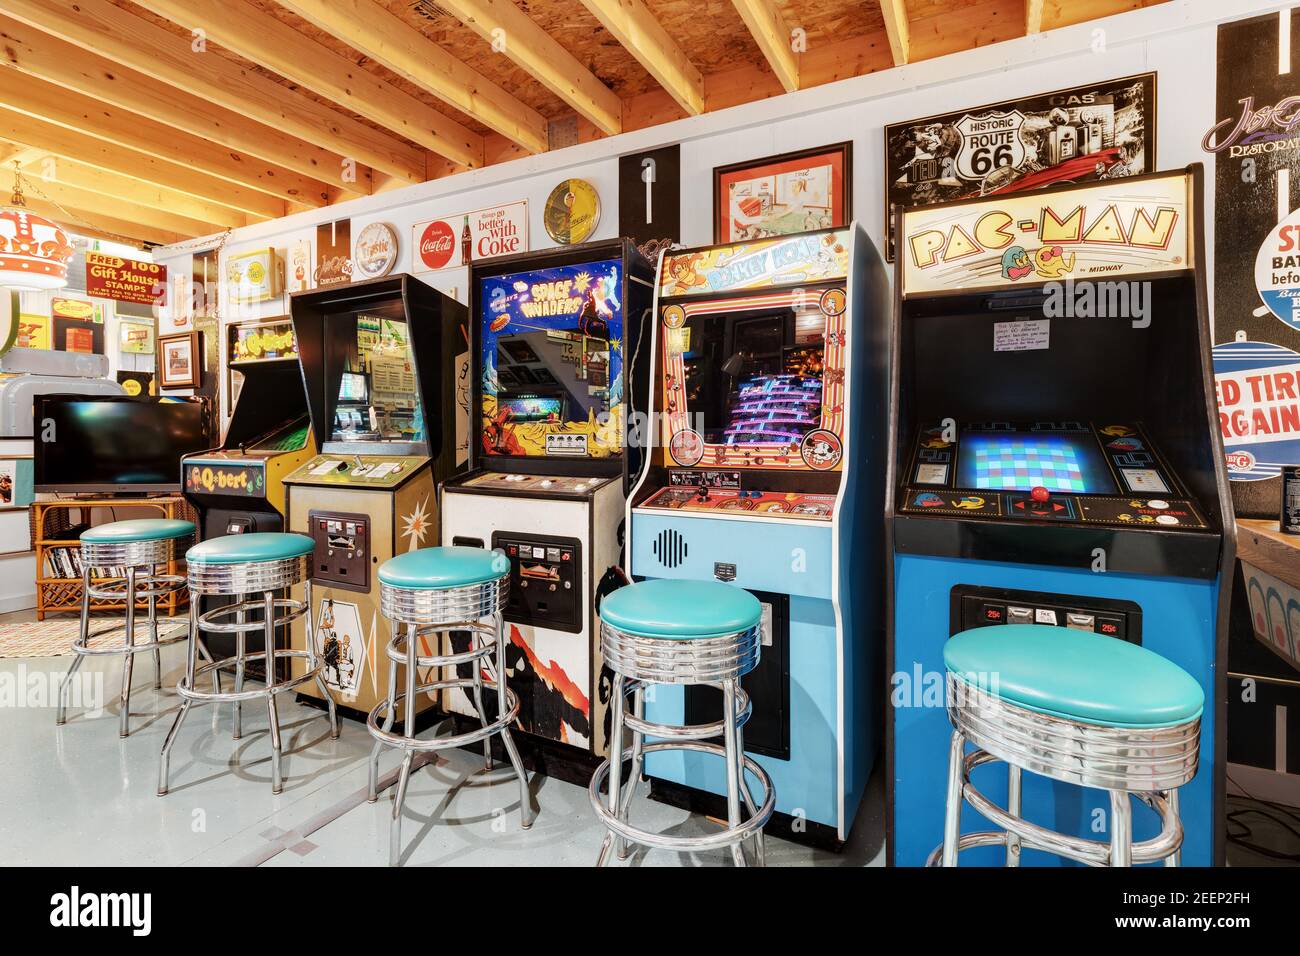 Eine Kellerhalle mit verschiedenen Retro-Flipper und klassischen Arcade-Spielen, alten Stahl- und Blechschildern und vielen Sitzgelegenheiten. Stockfoto